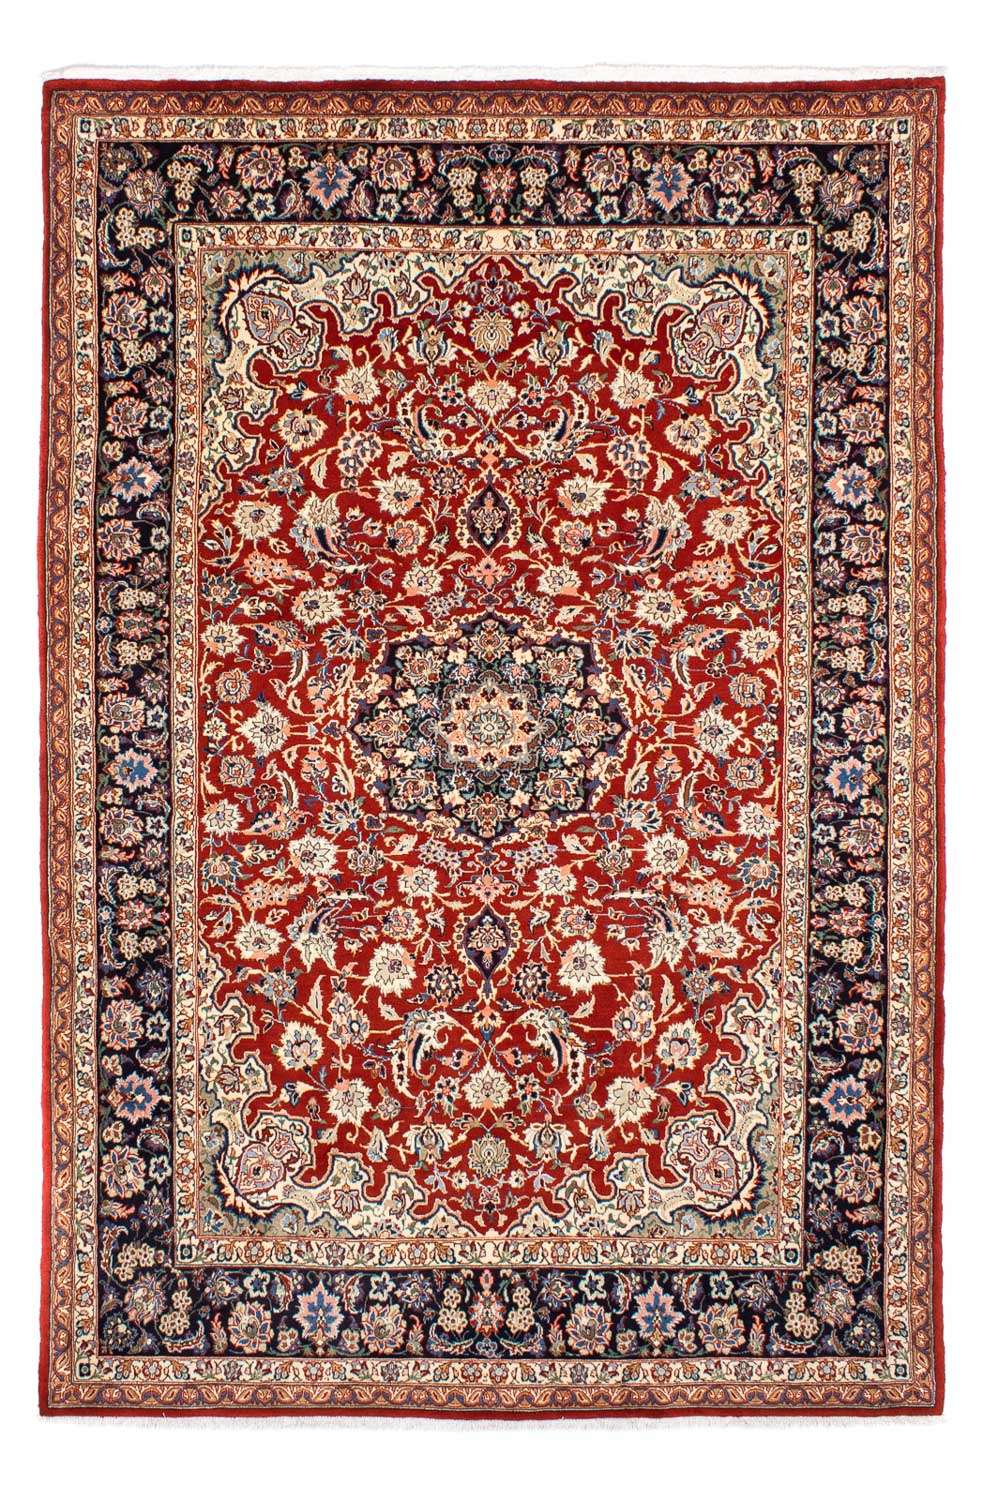 Tapis persan - Royal - 295 x 200 cm - rouge foncé